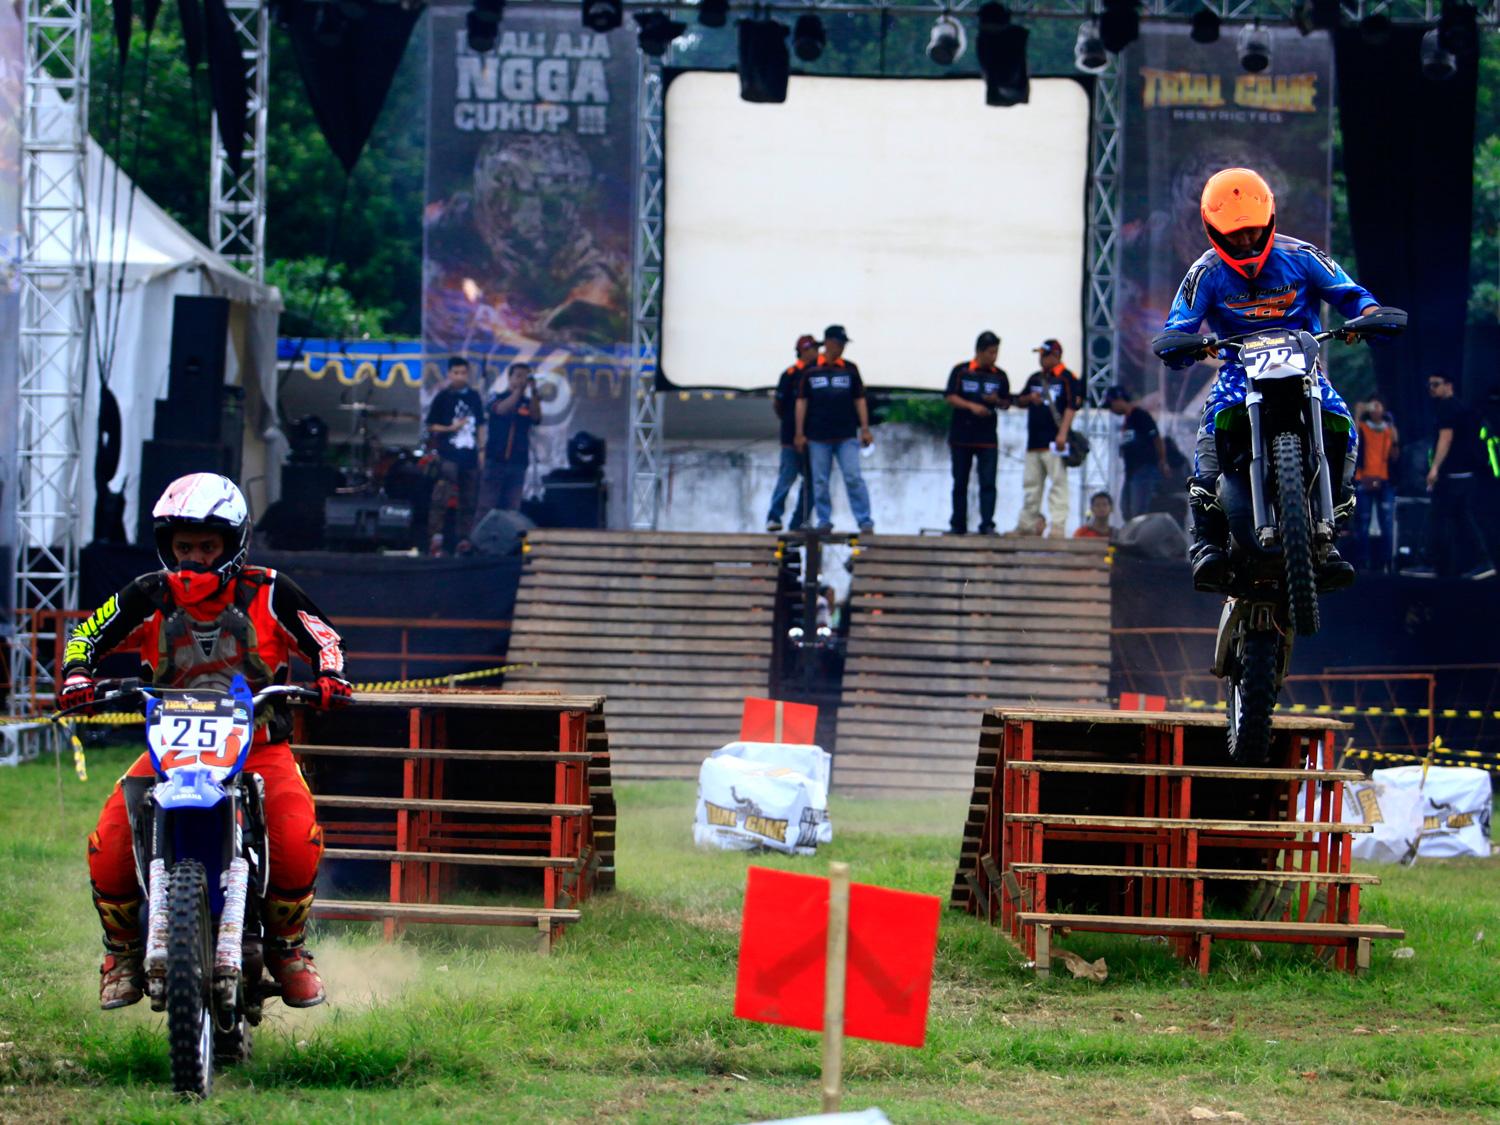 Pembukaan Trial Game seri 1 di Kota Jember diawali dengan pembalap Endy Wijanarko melawan Nanda Medika